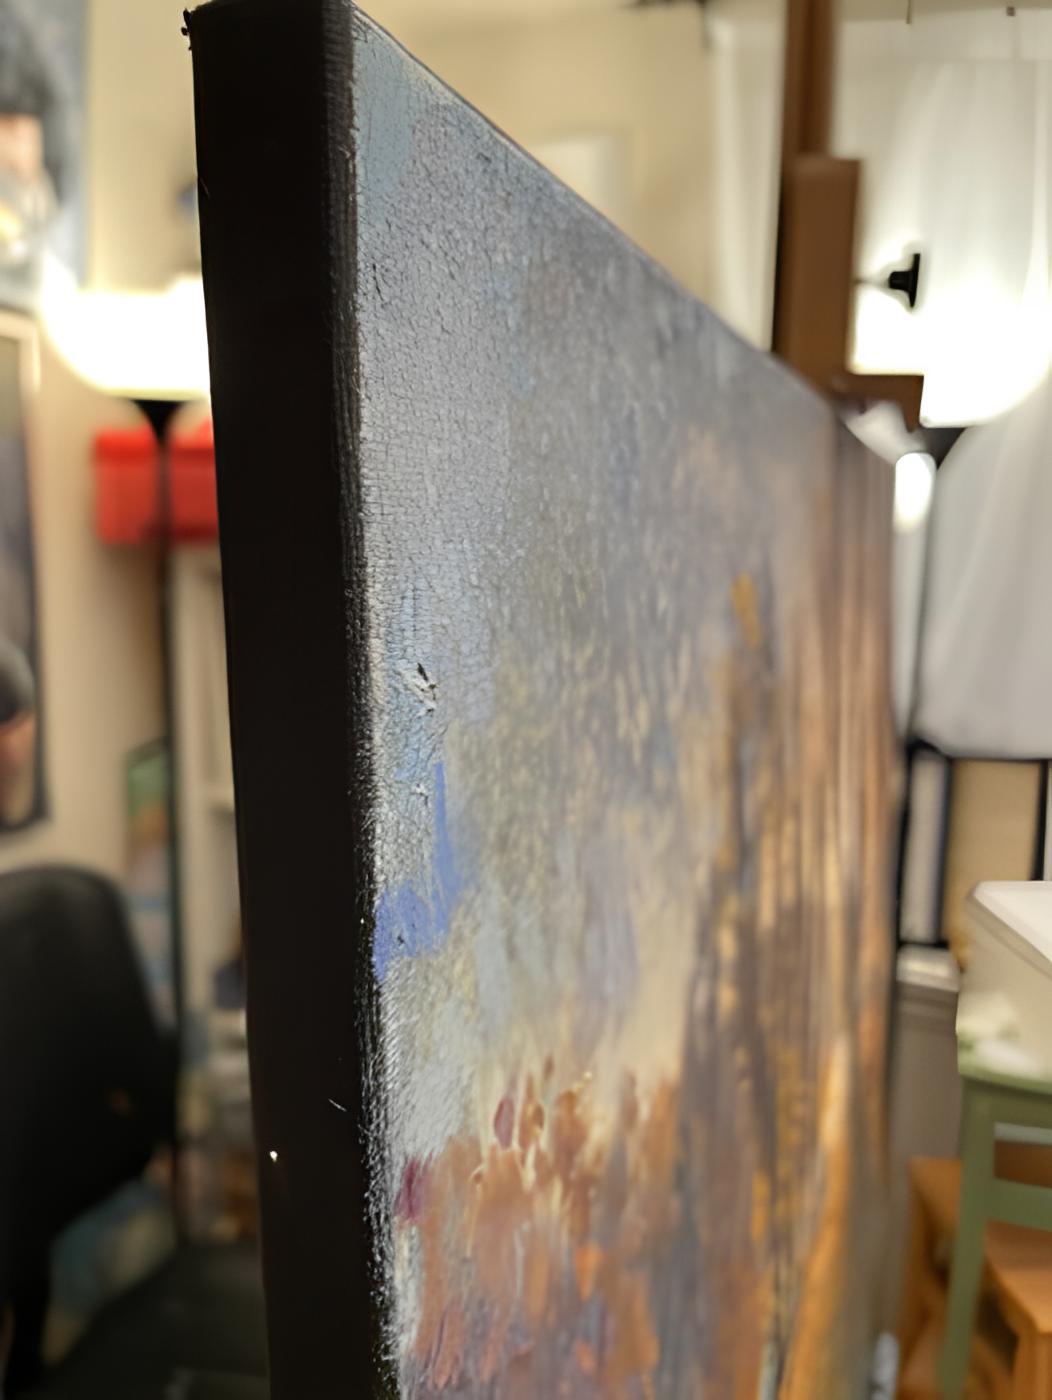 Dans cette peinture à l'huile, j'ai adopté la fluidité de l'impressionnisme pour capturer la grâce éphémère de la nature. Le doux jeu de lumière à travers les arbres, la chaleur des feuilles mortes et le chemin serein invitent à la paix et à la